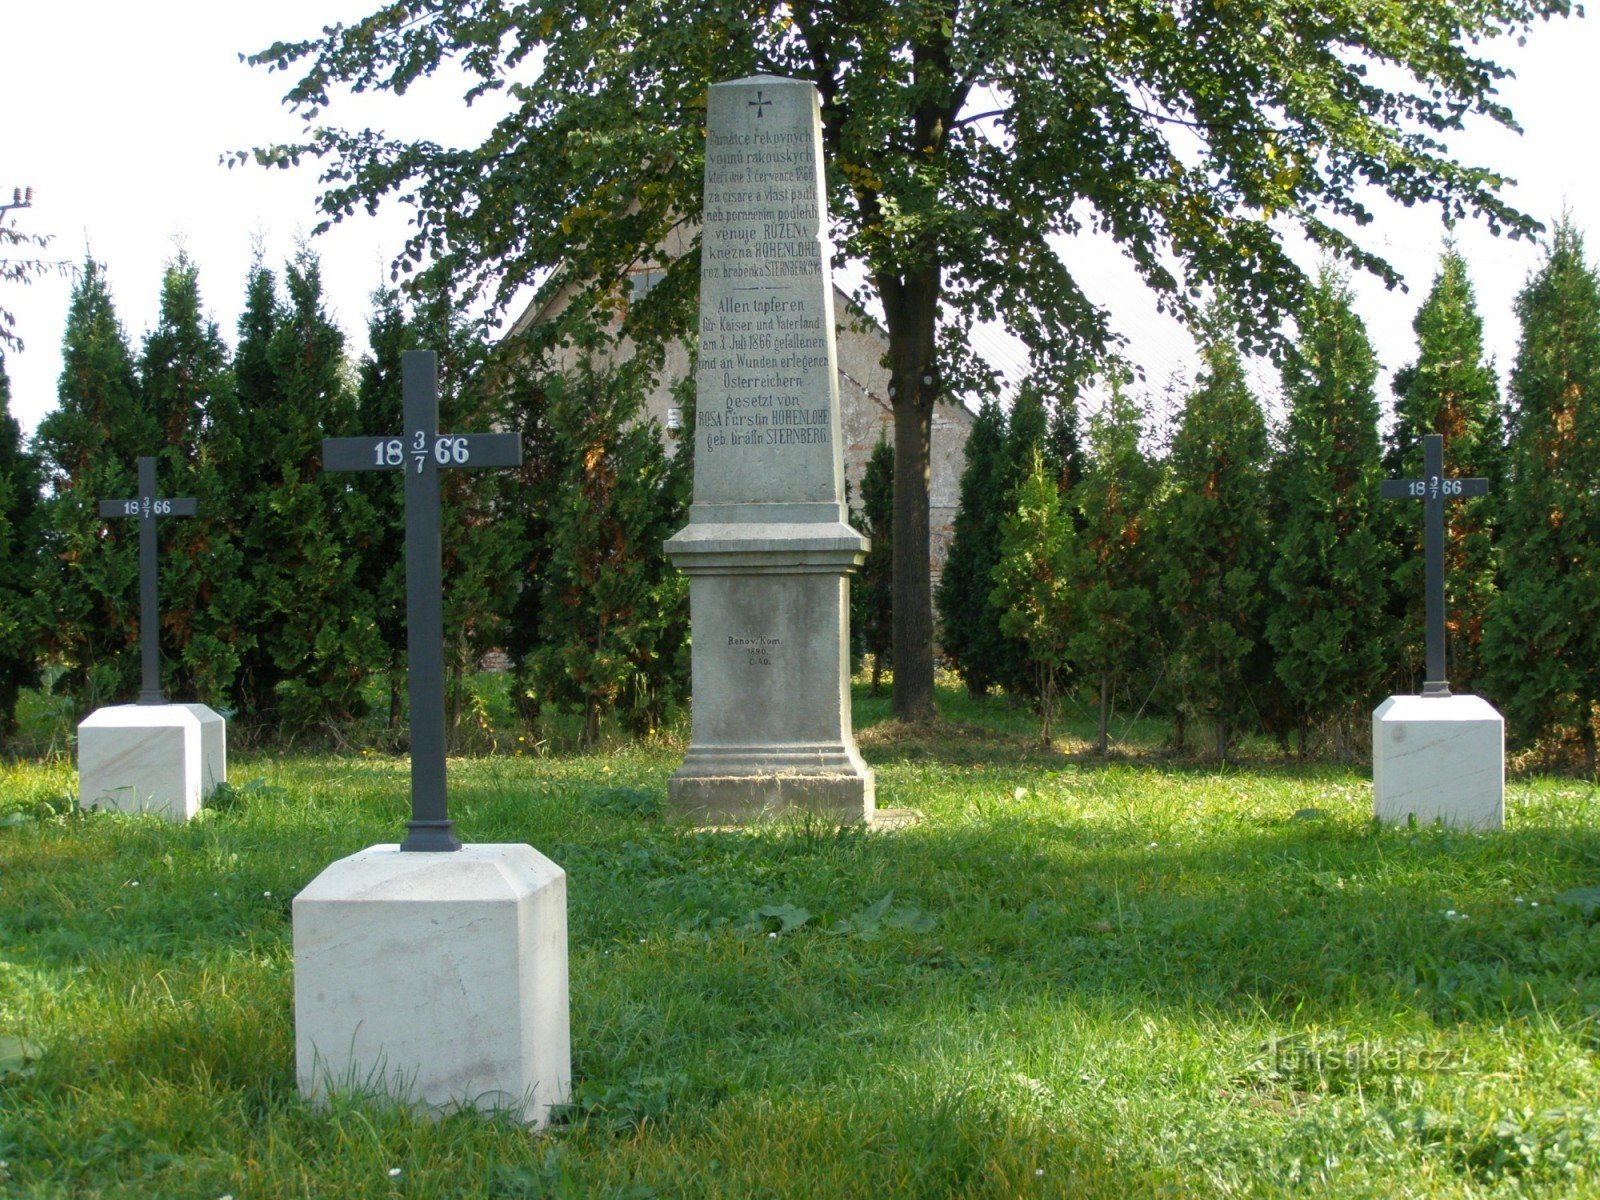 Nedelíště - 1866 年战役的军事公墓